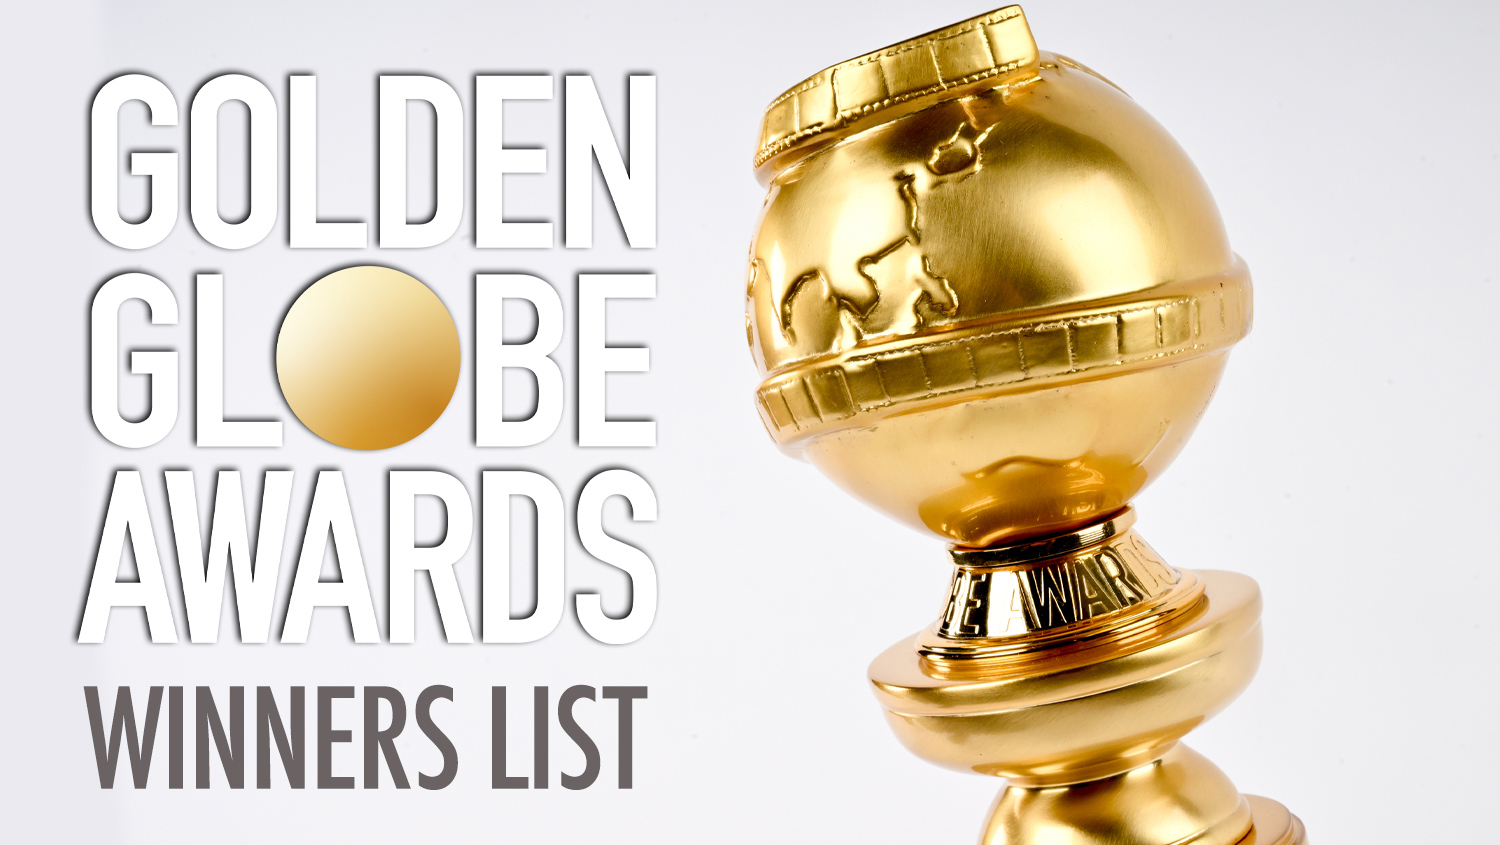 Golden Globes Winners List Updating Live